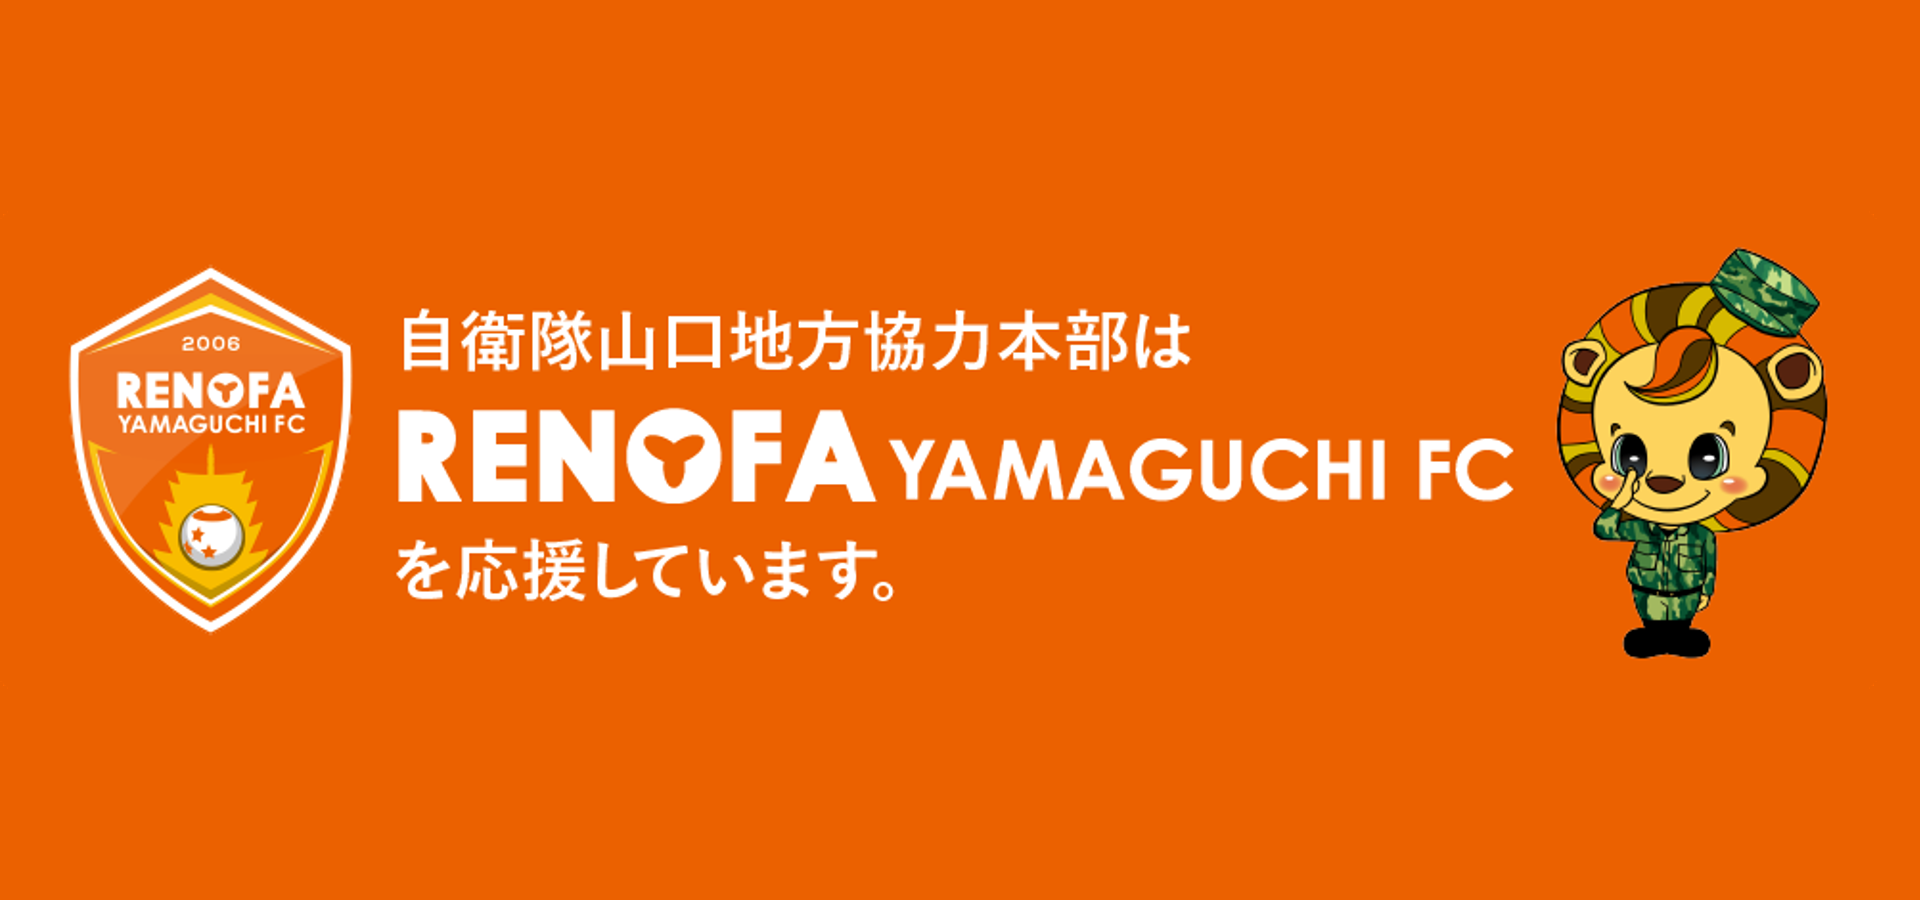 自衛隊山口地方協力本部はRENOFA YAMAGUCHI FCを応援しています。